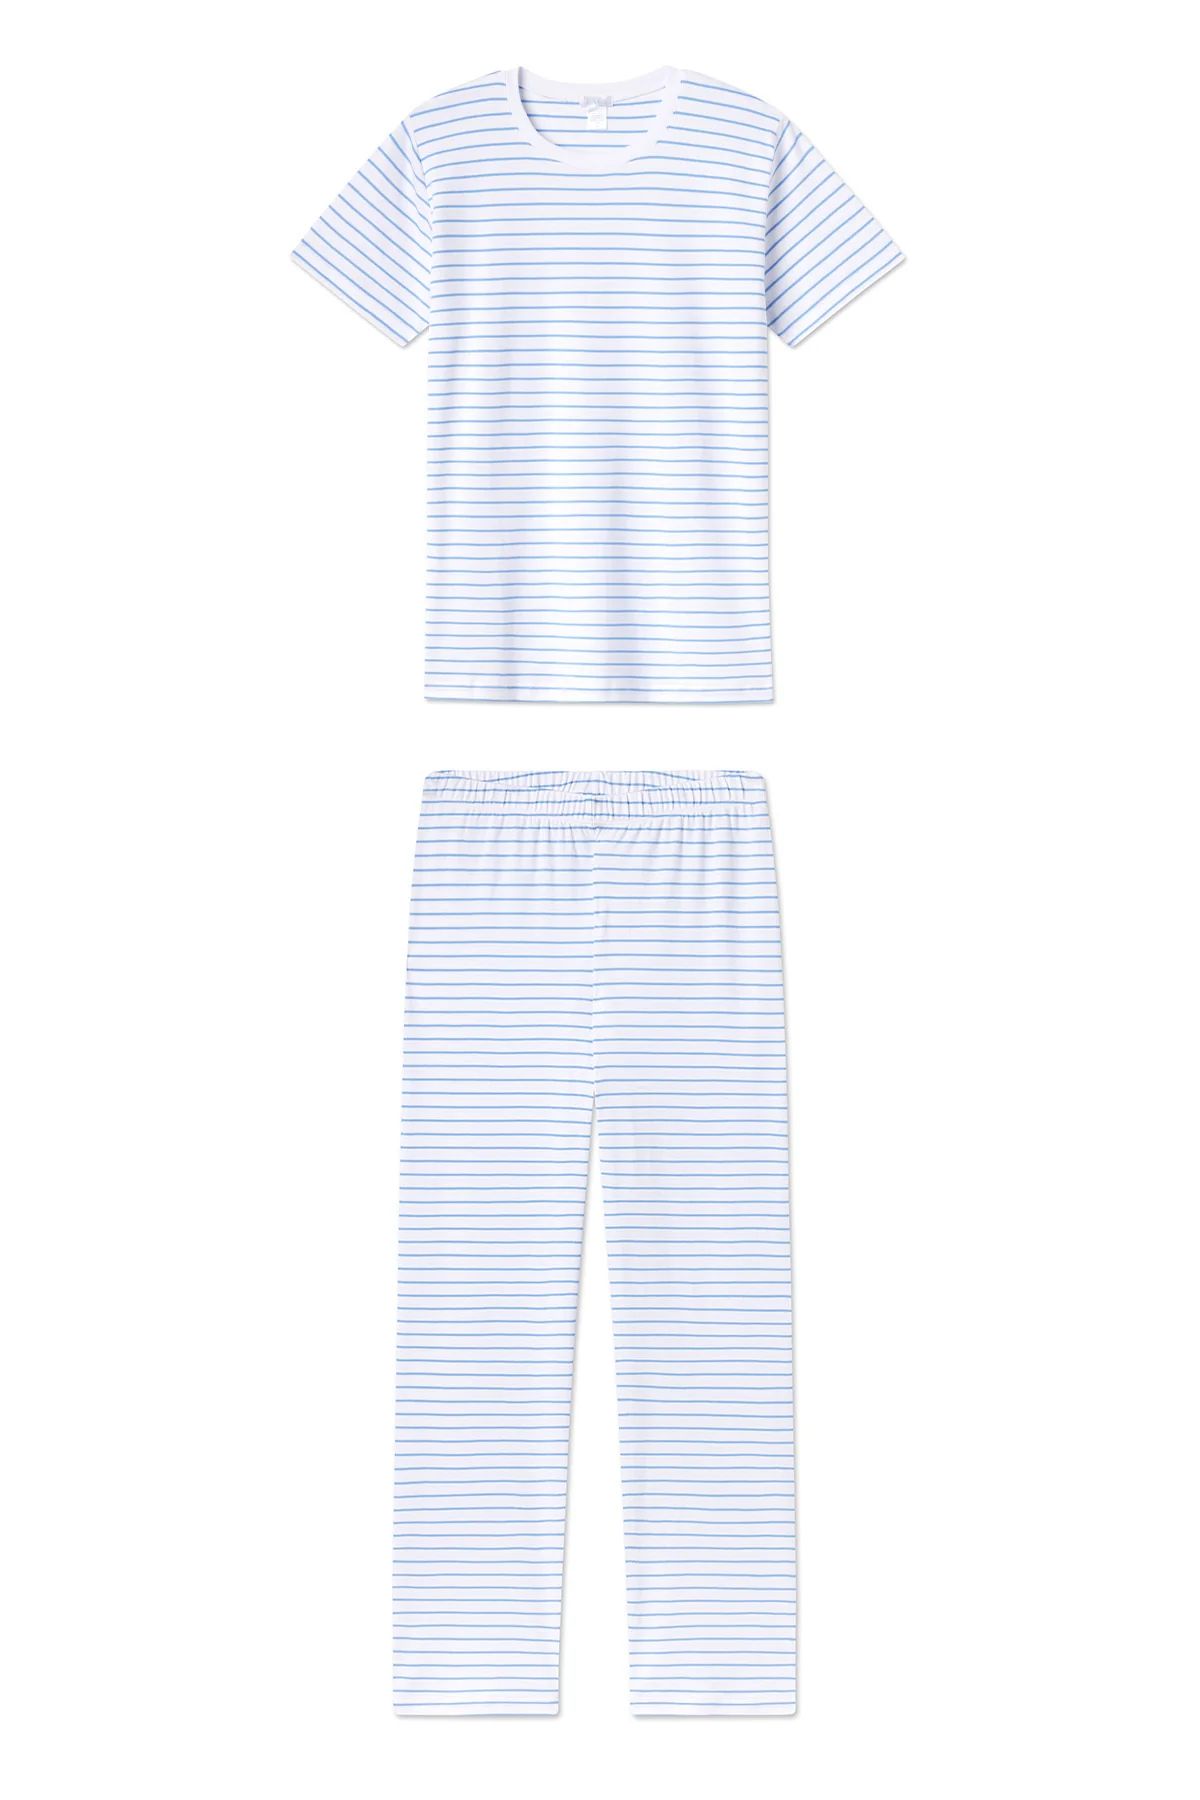 Pima Short-Long Weekend Set in Baltic Blue Stripe | Lake Pajamas